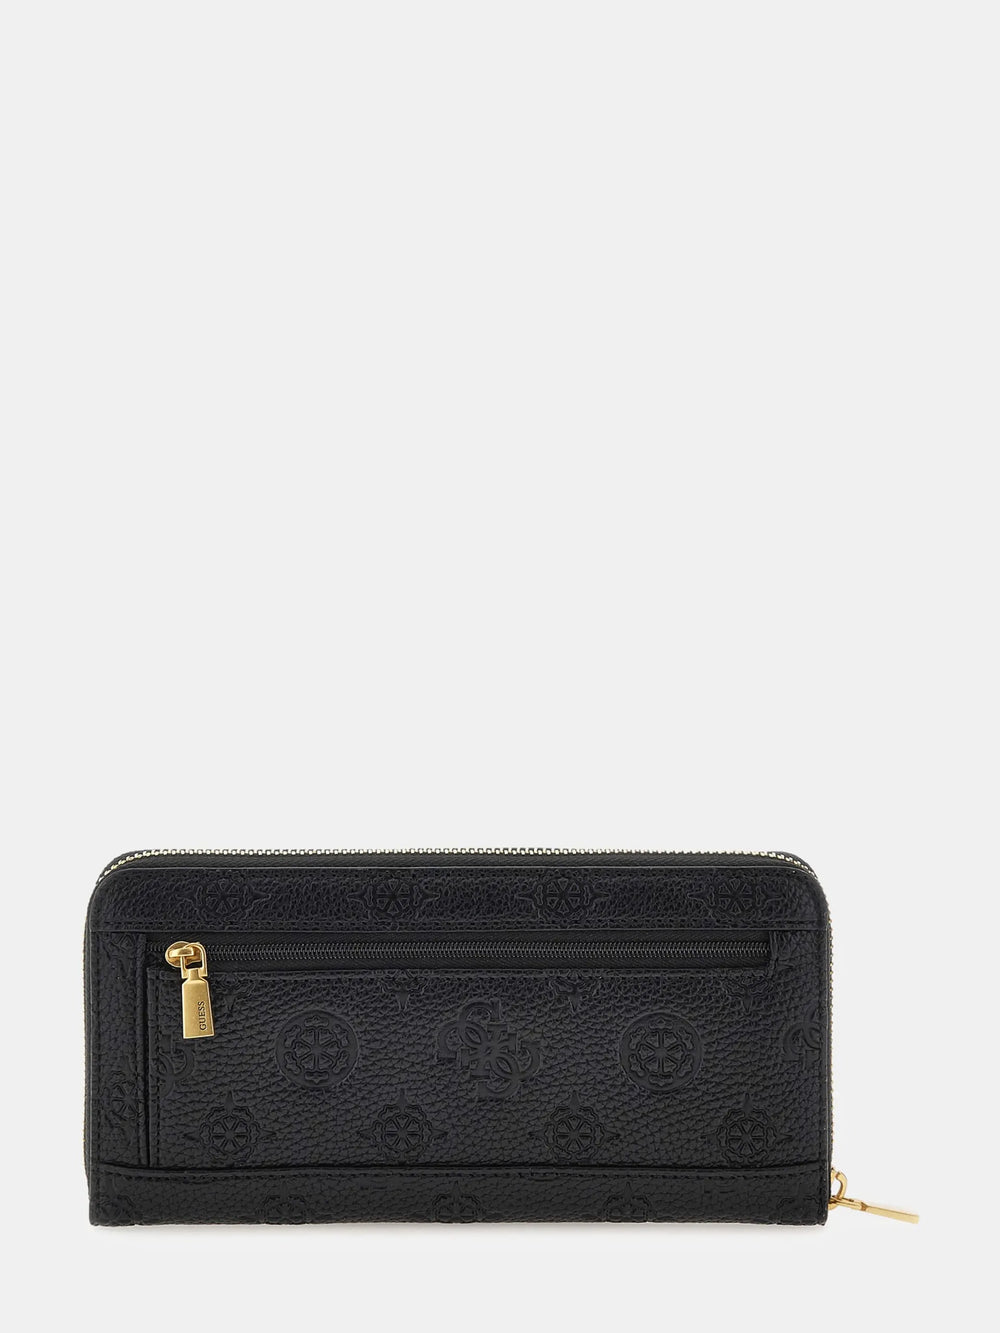 Handbags : Ladies Wallets – GUESS